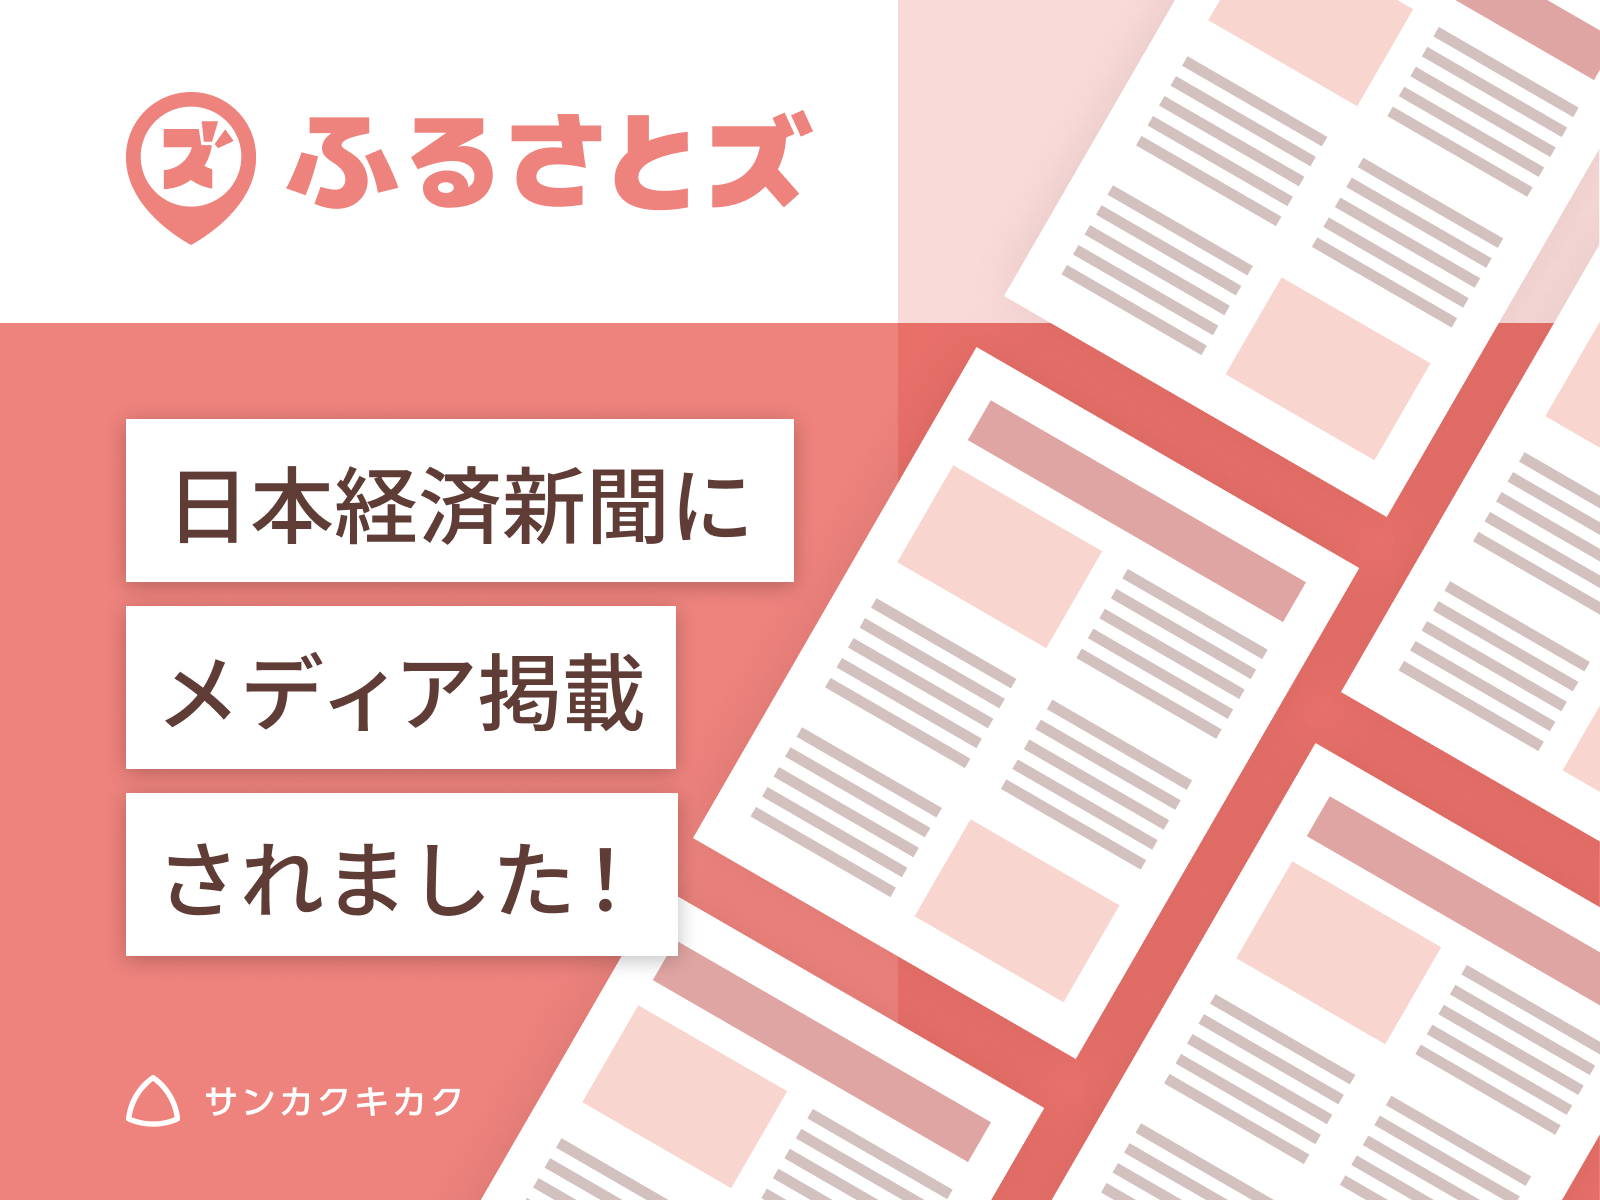 ふるさとズ｜ビジネスモデル特許取得が日経新聞で掲載されました。